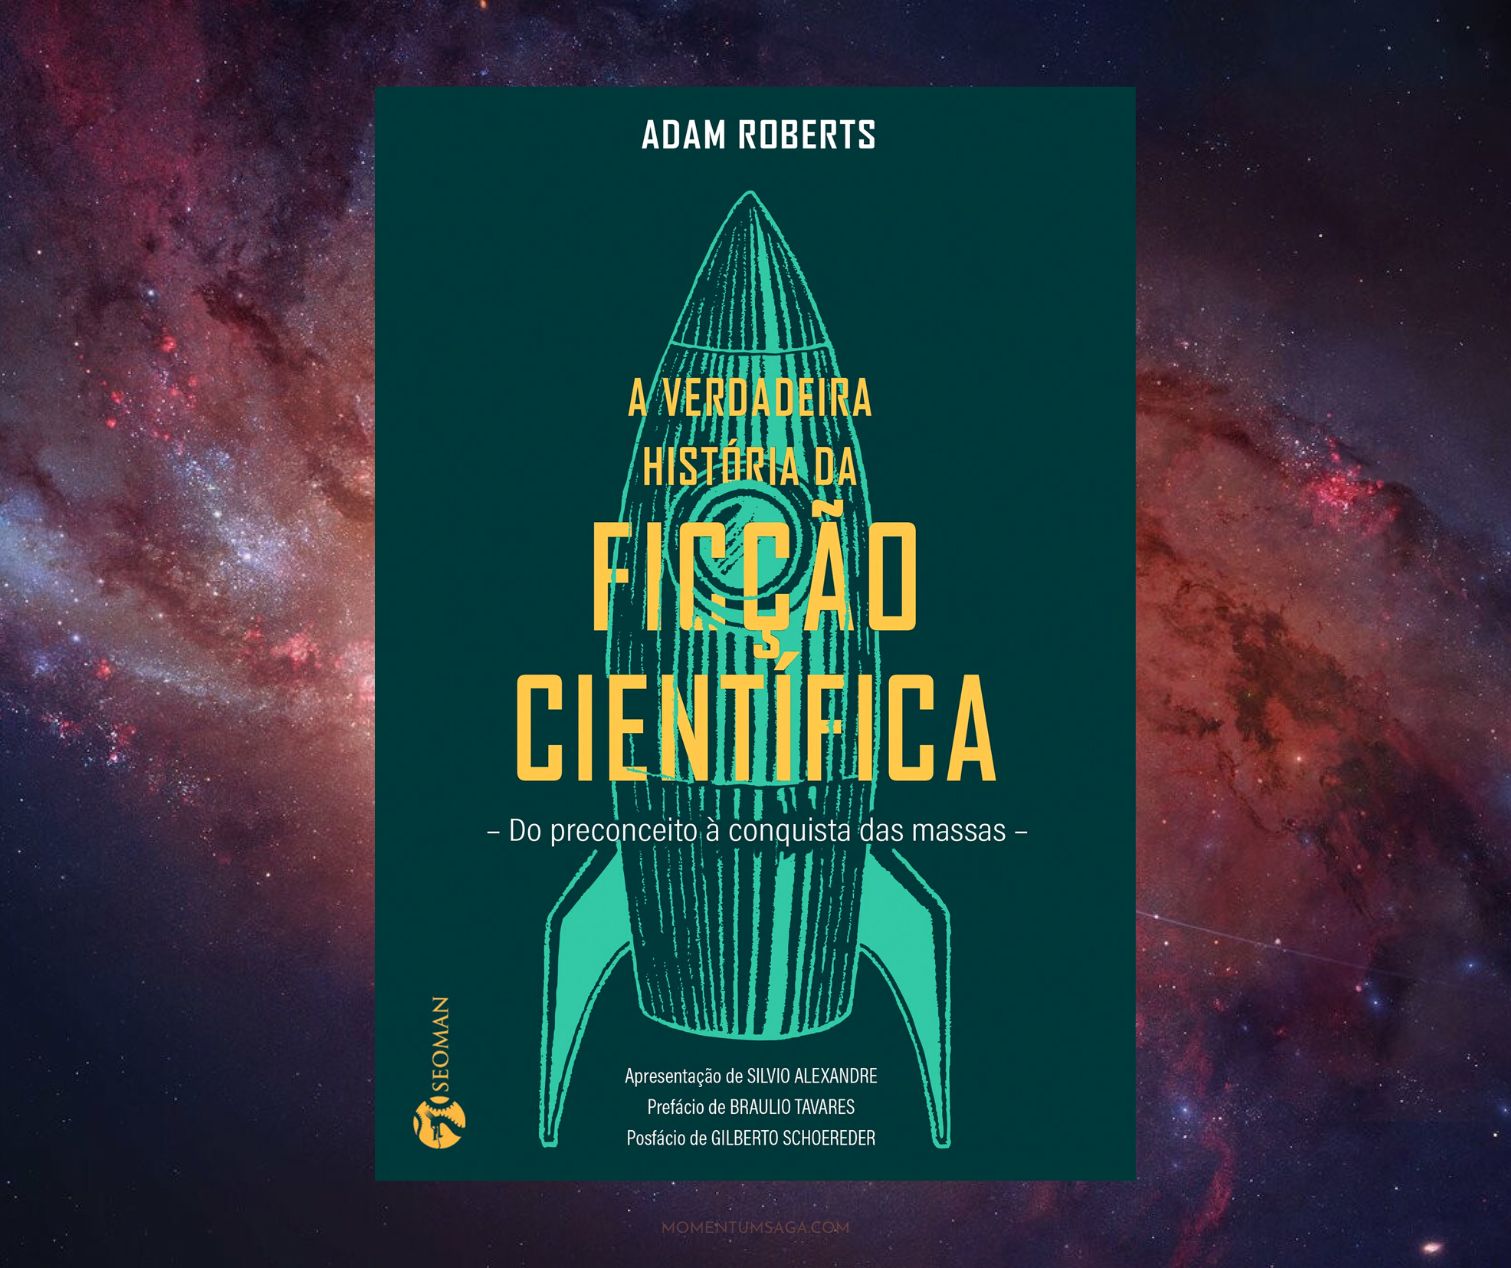 Resenha: A verdadeira história da ficção científica, de Adam Roberts